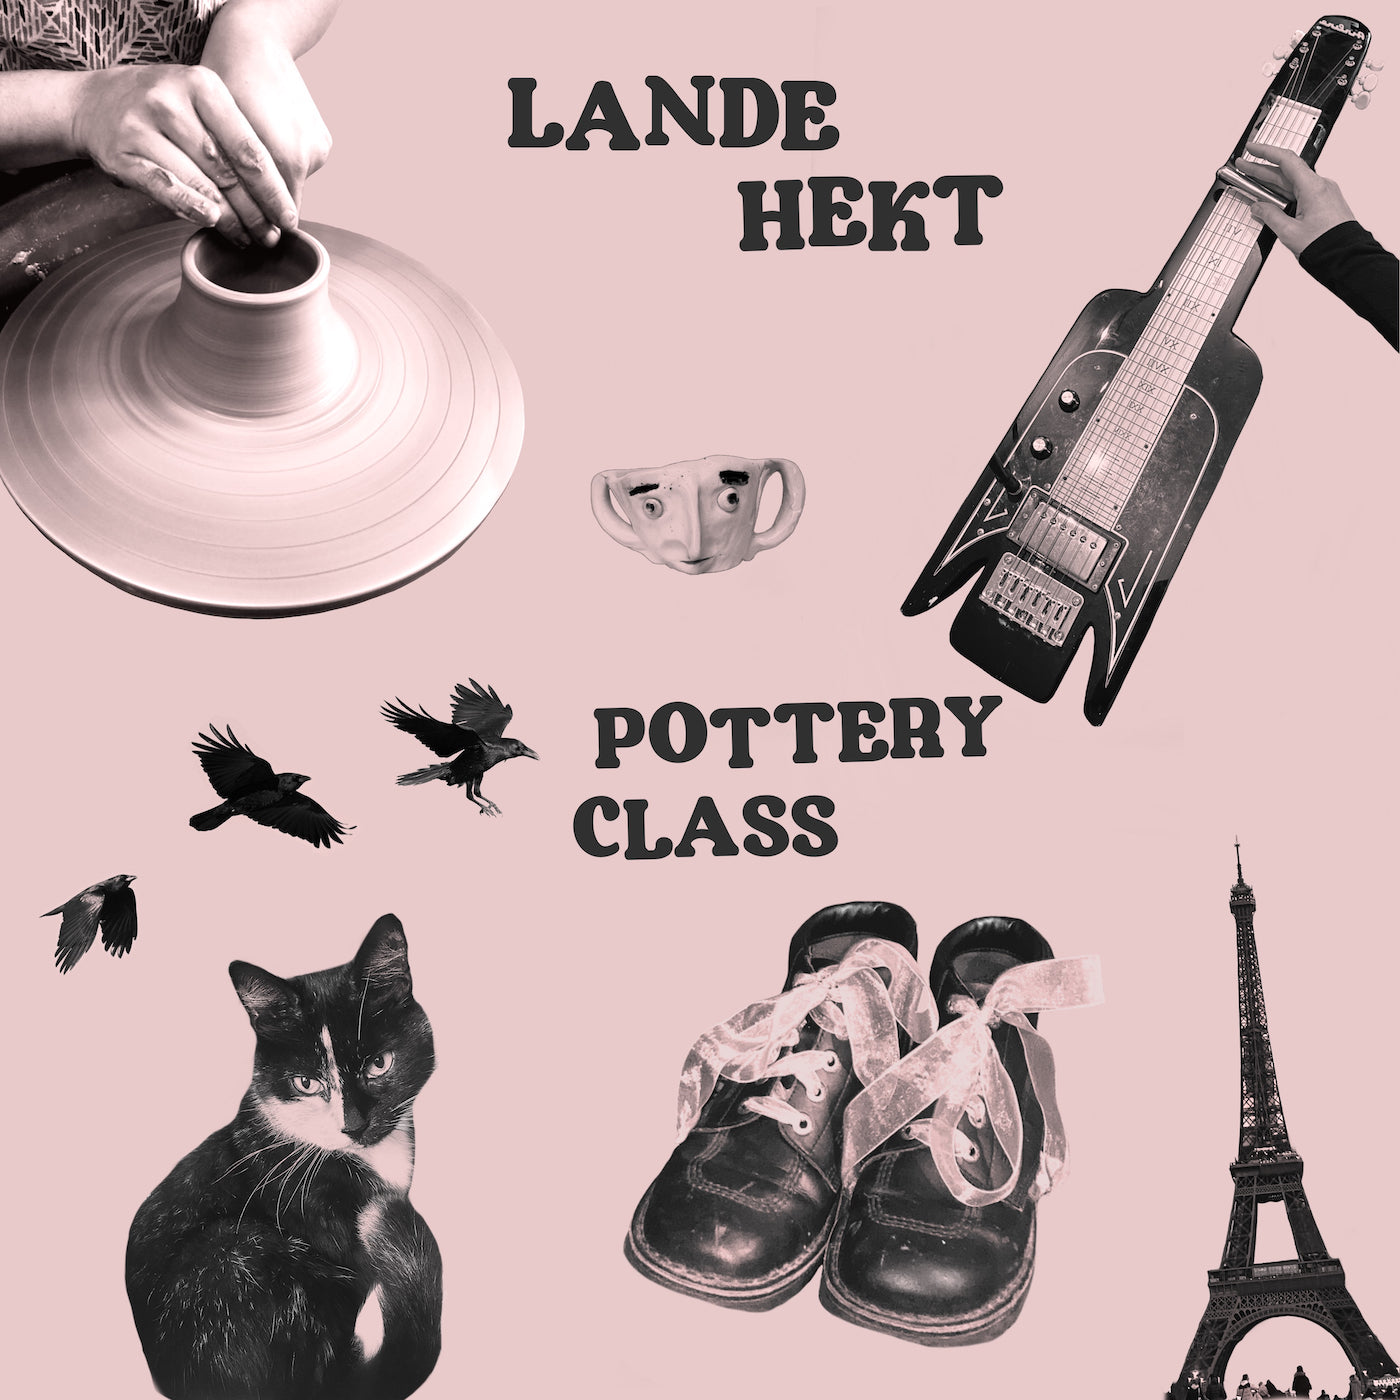 Lande Hekt - "Pottery Class"